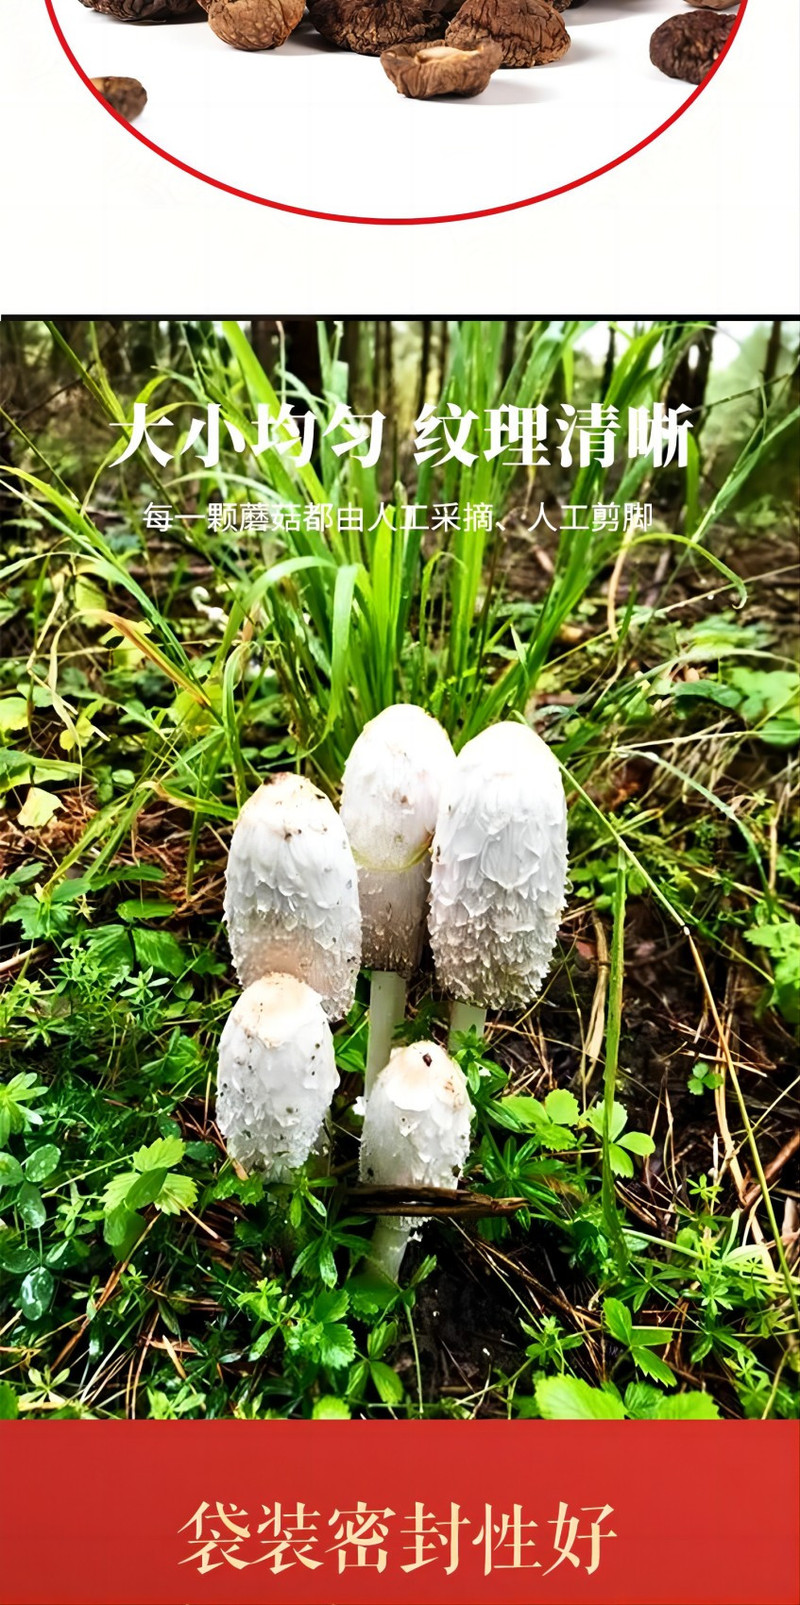 裕栢福 裕栢福坝上草原蘑菇 珍珠菇100g *2